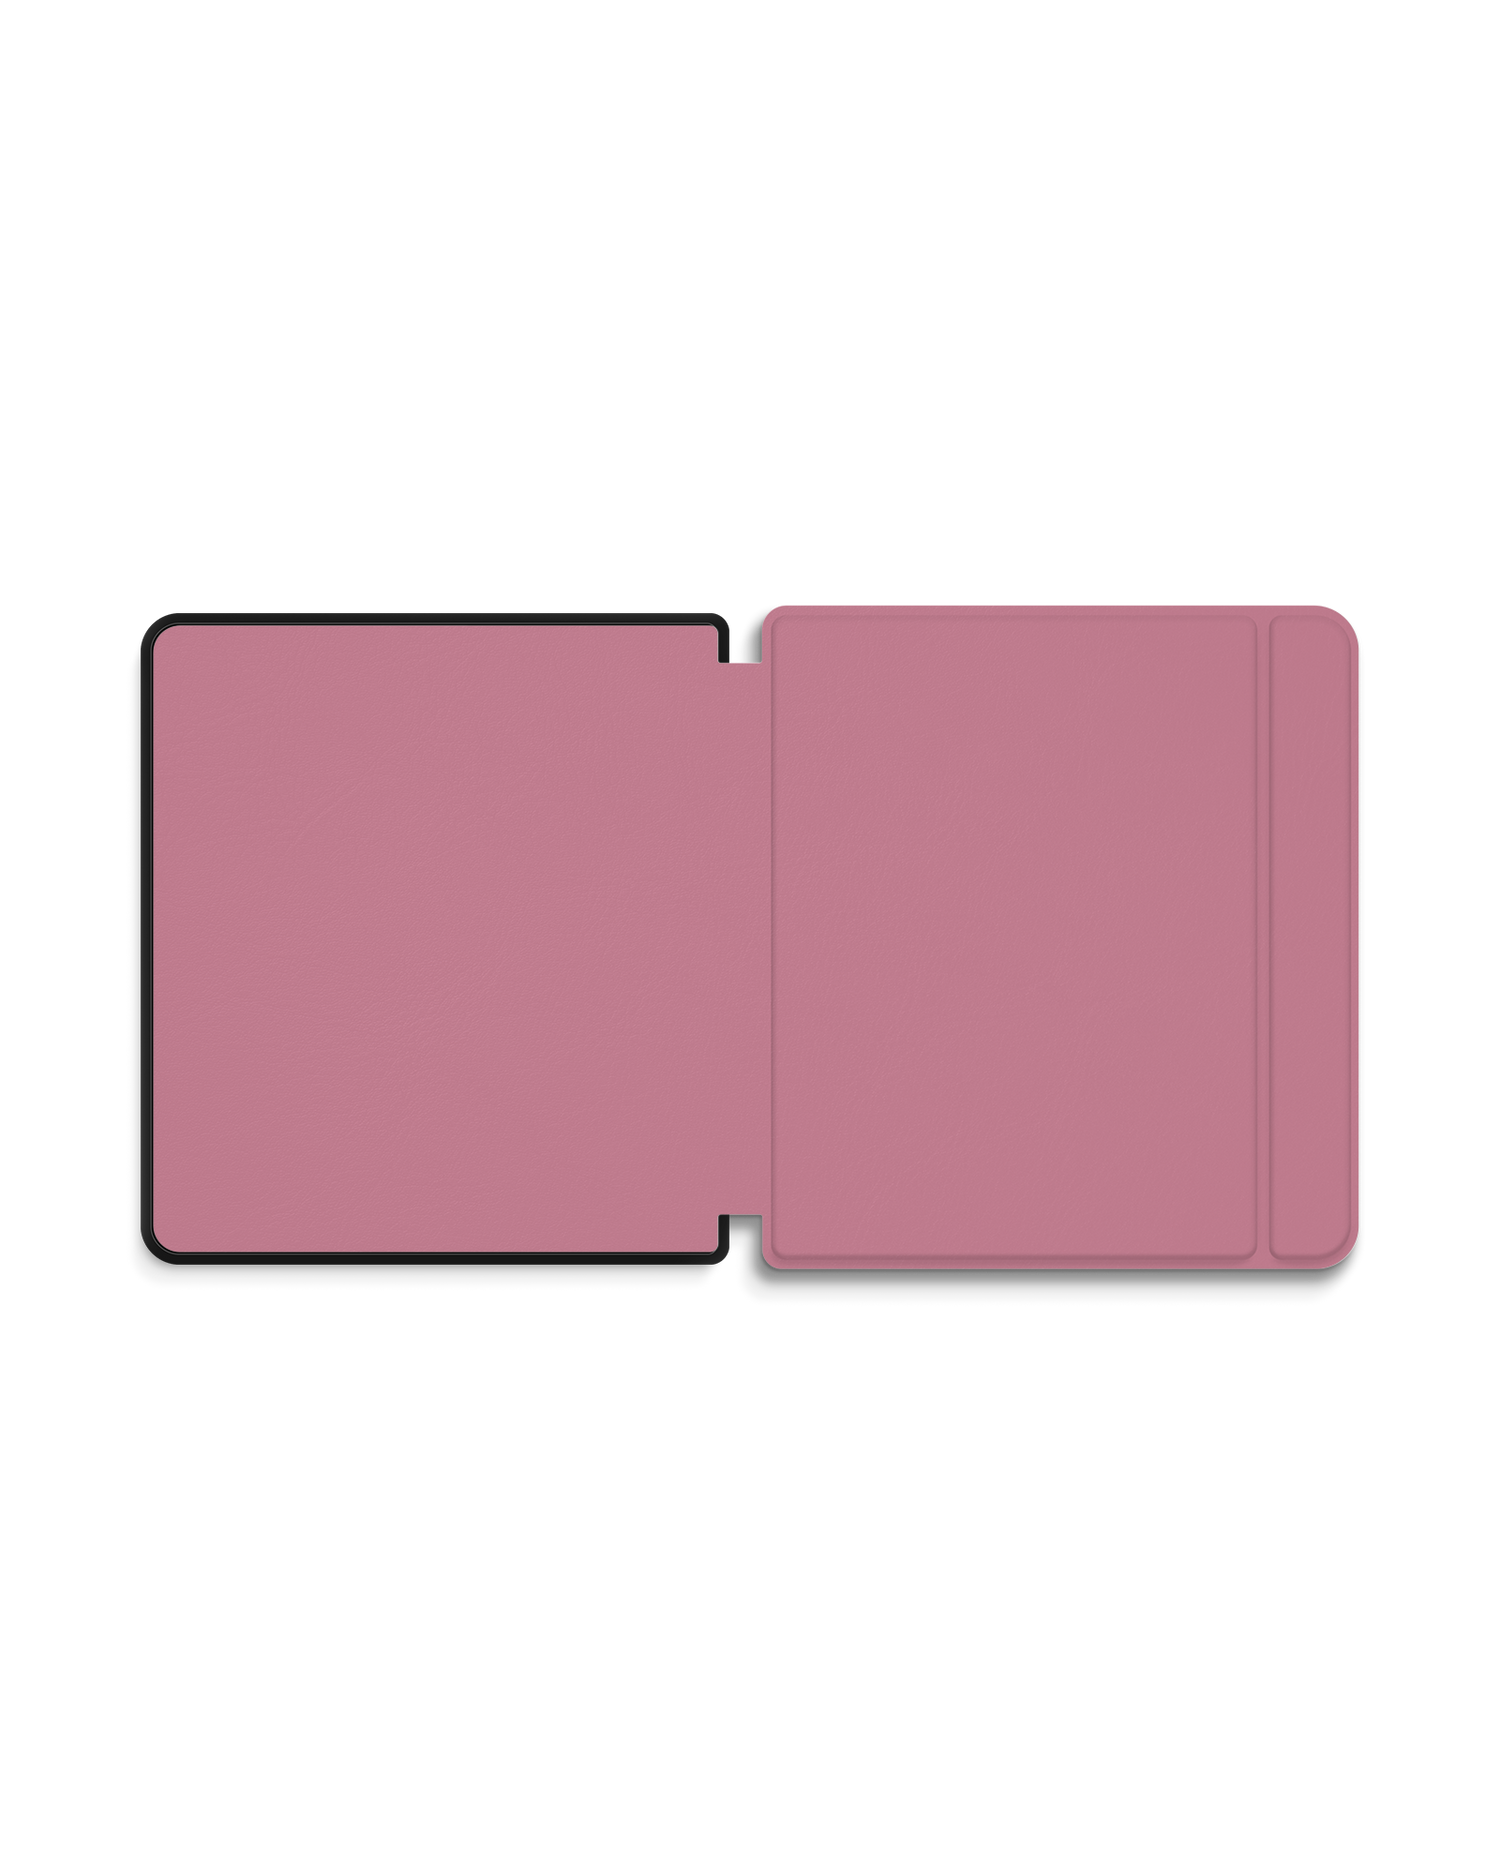 WILD ROSE eBook Reader Smart Case für tolino epos 2: Geöffnet Außenansicht